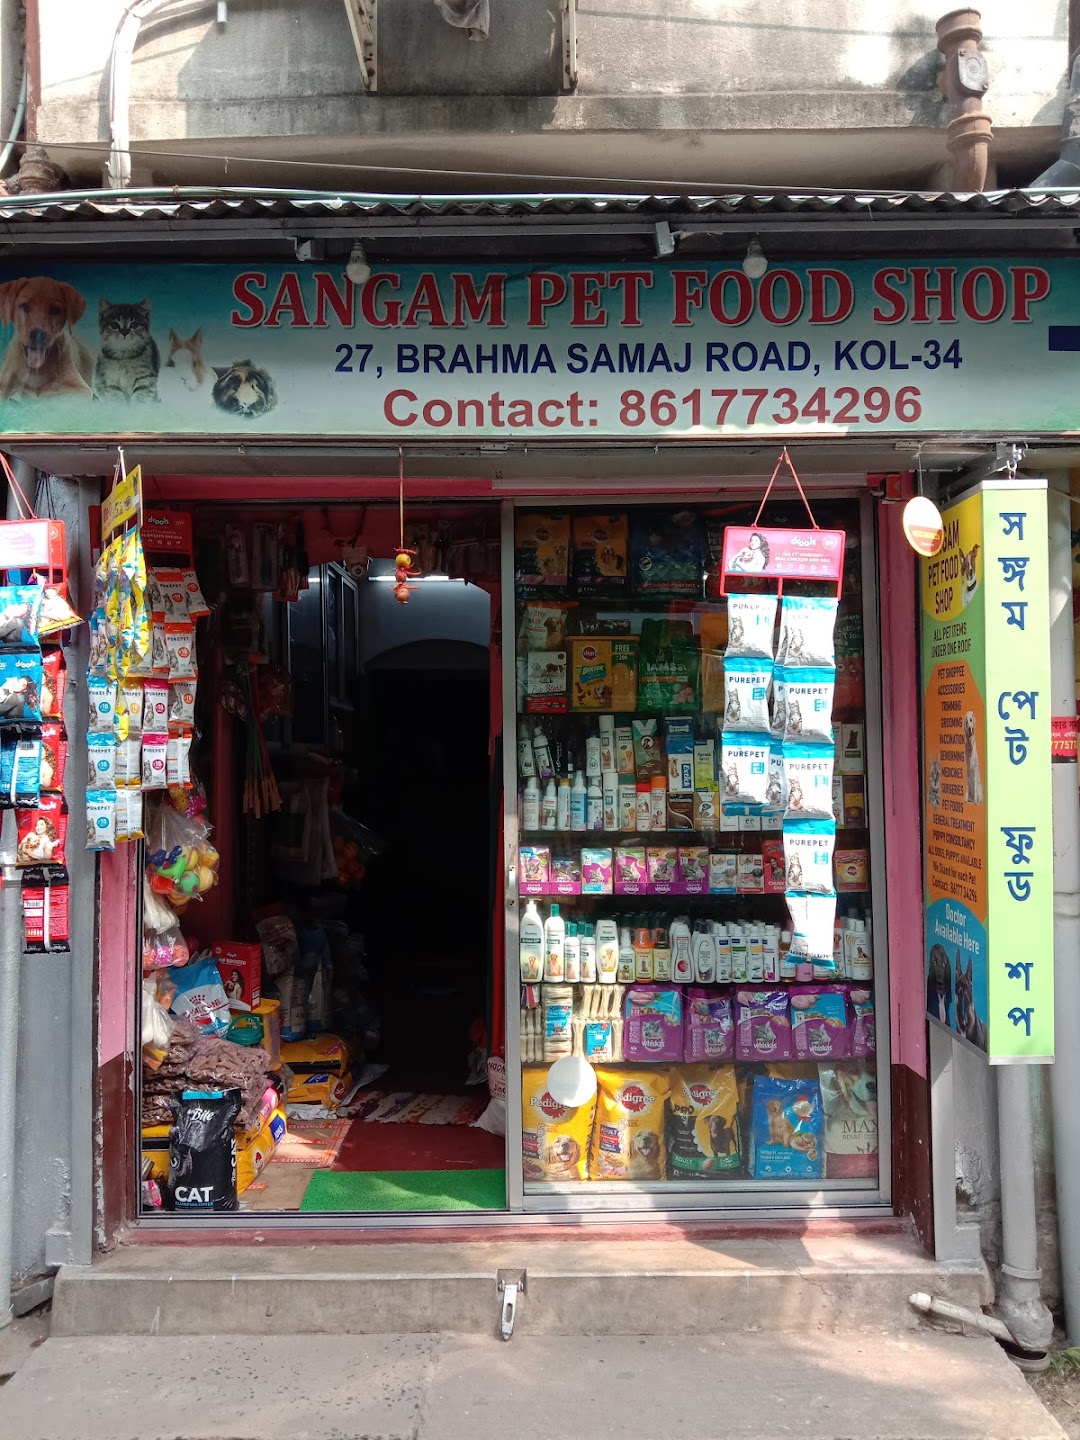 Sangam Pet Food Shop